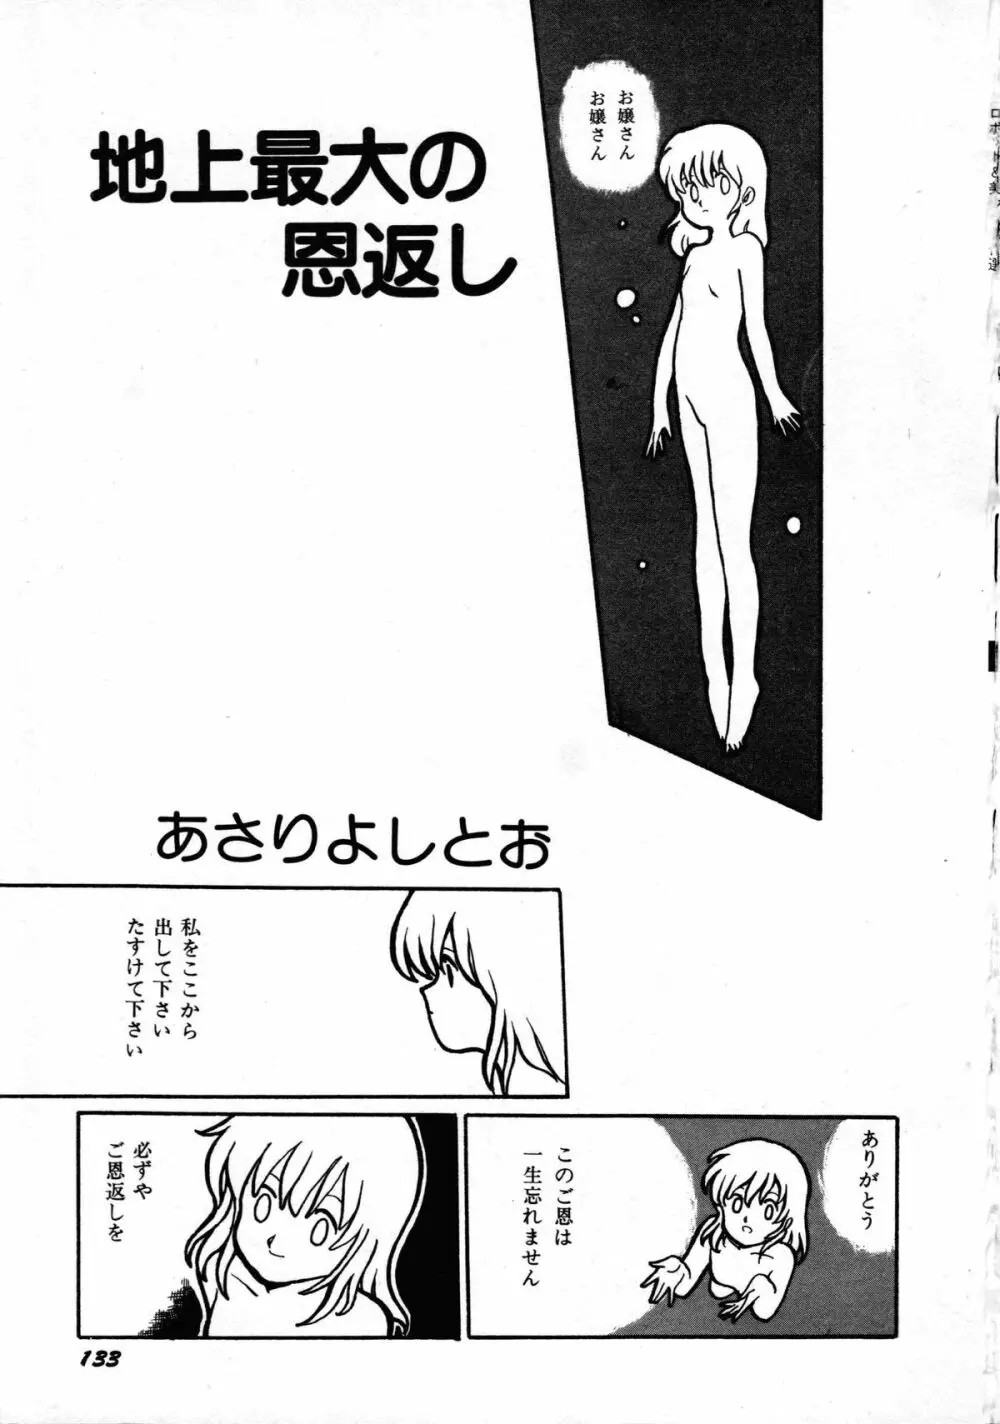 ロボット&美少女傑作選 レモン・ピープル1982-1986 137ページ